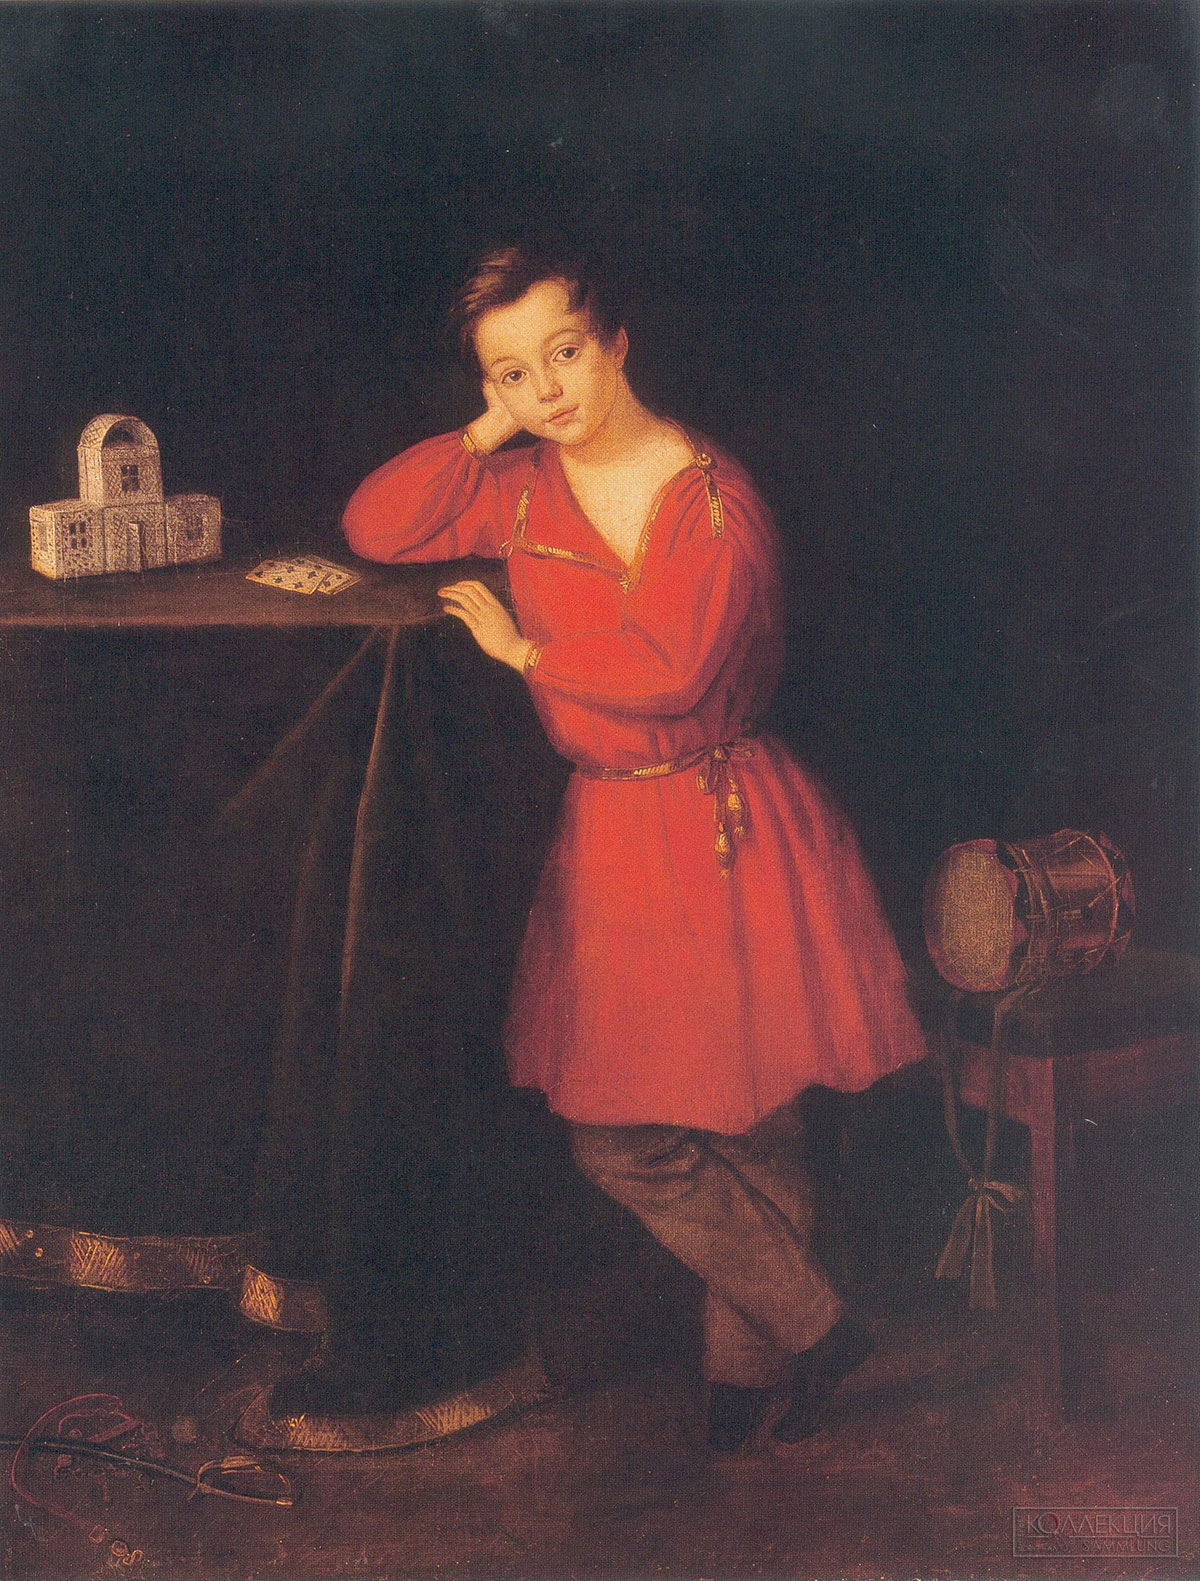 Неизвестный художник. перв. пол. XIX в. Портрет мальчика в красной рубашке.1830-е. ГРМ